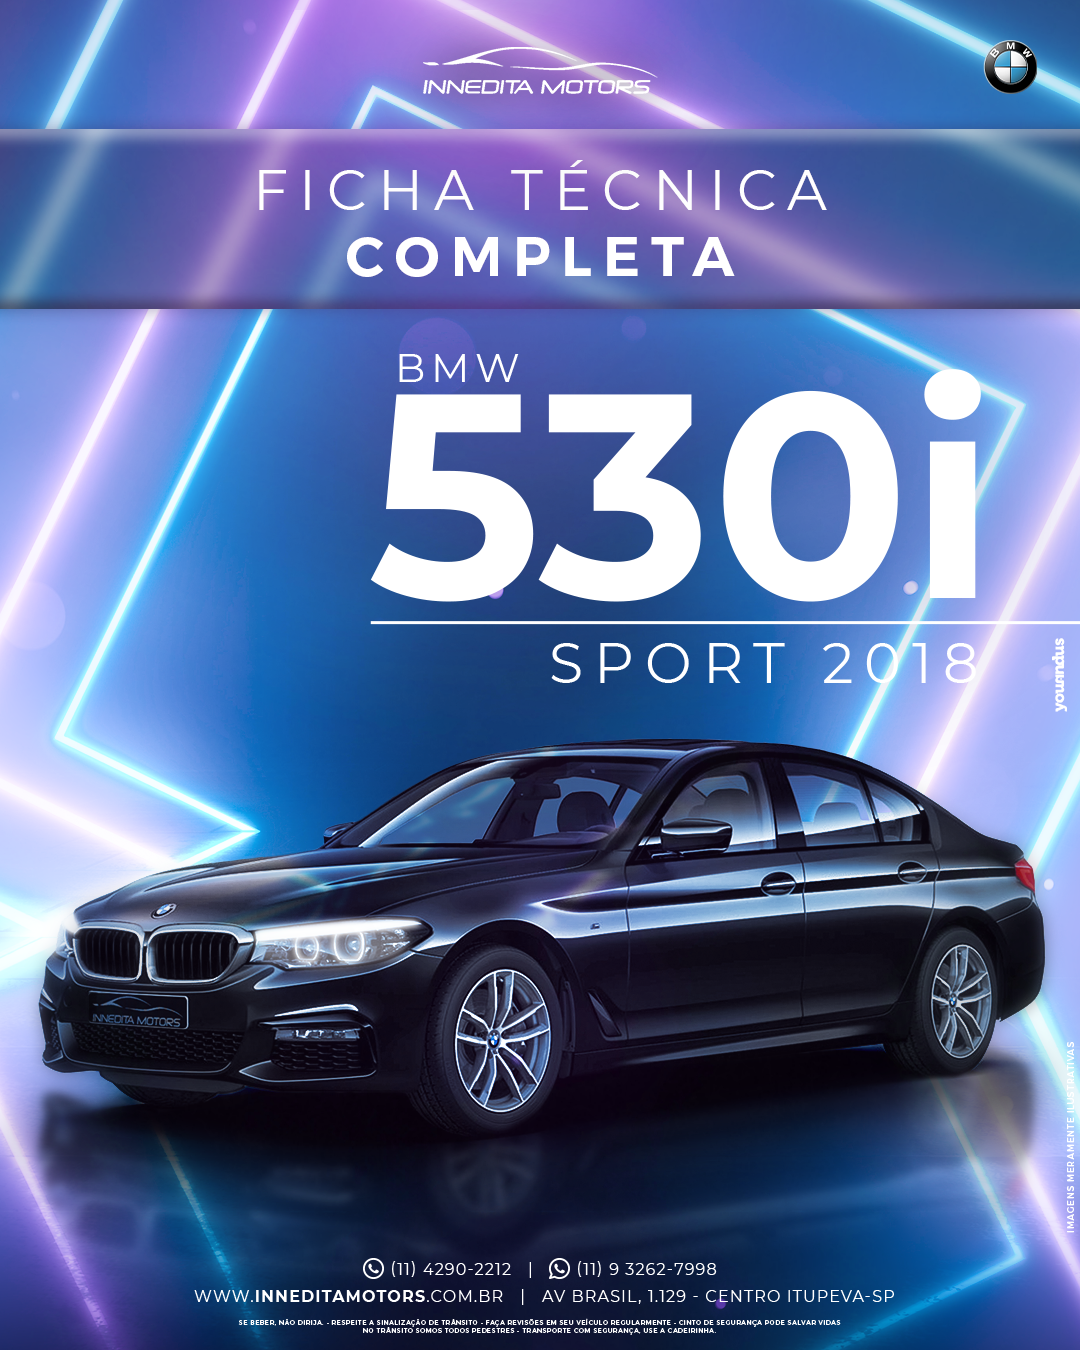 BMW 530i Sport 2018: Ficha Técnica Completa